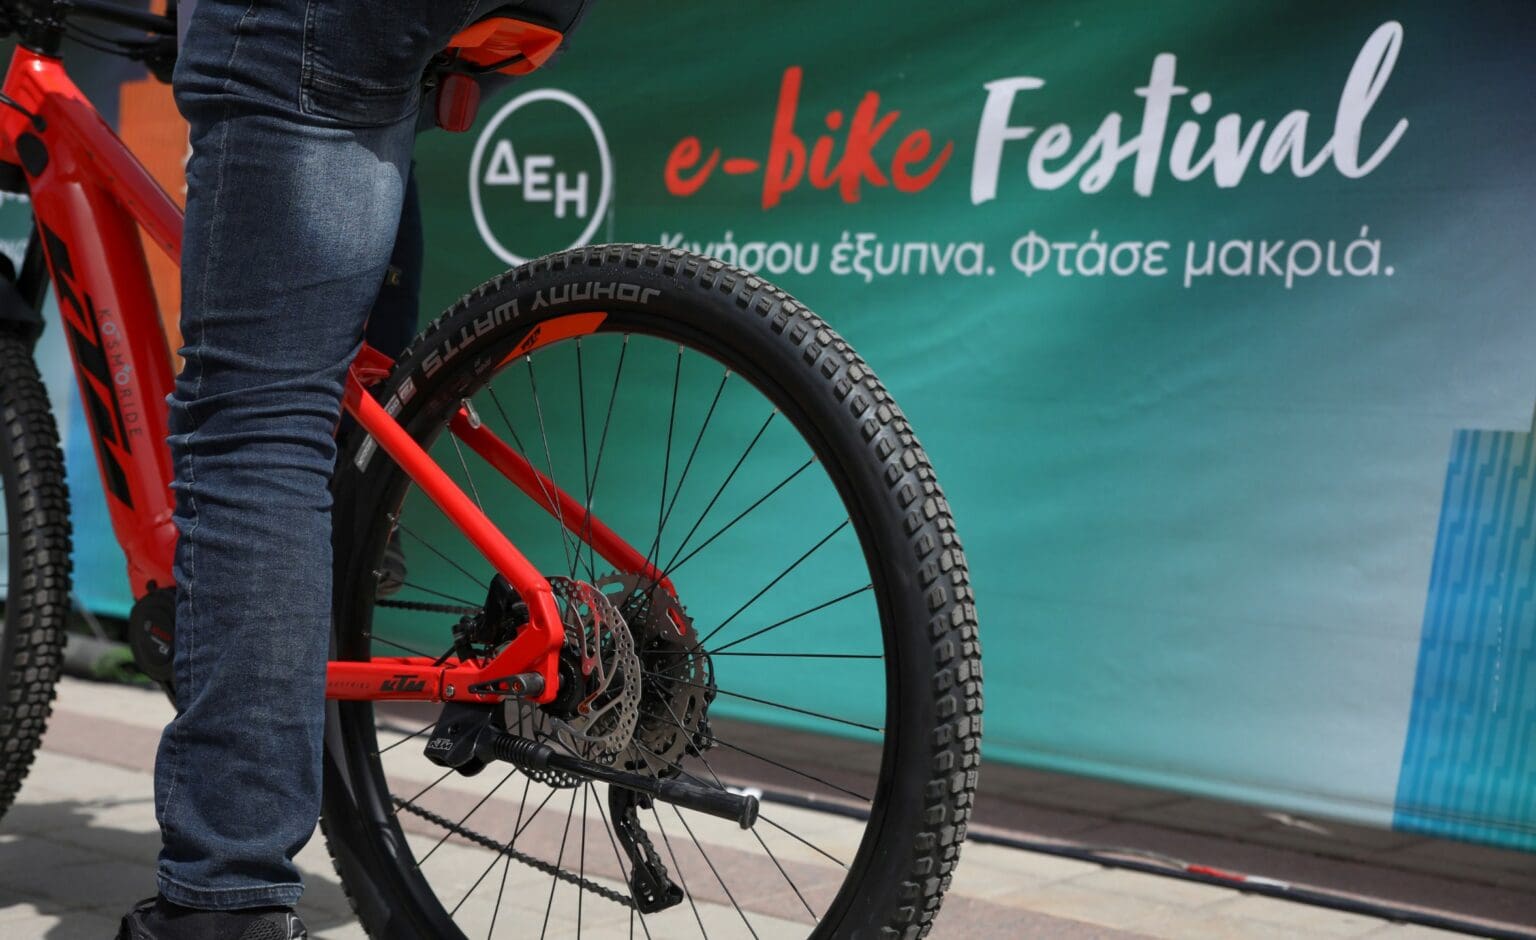 Το ΔΕΗ e-bike Festival έρχεται στην Πτολεμαΐδα!